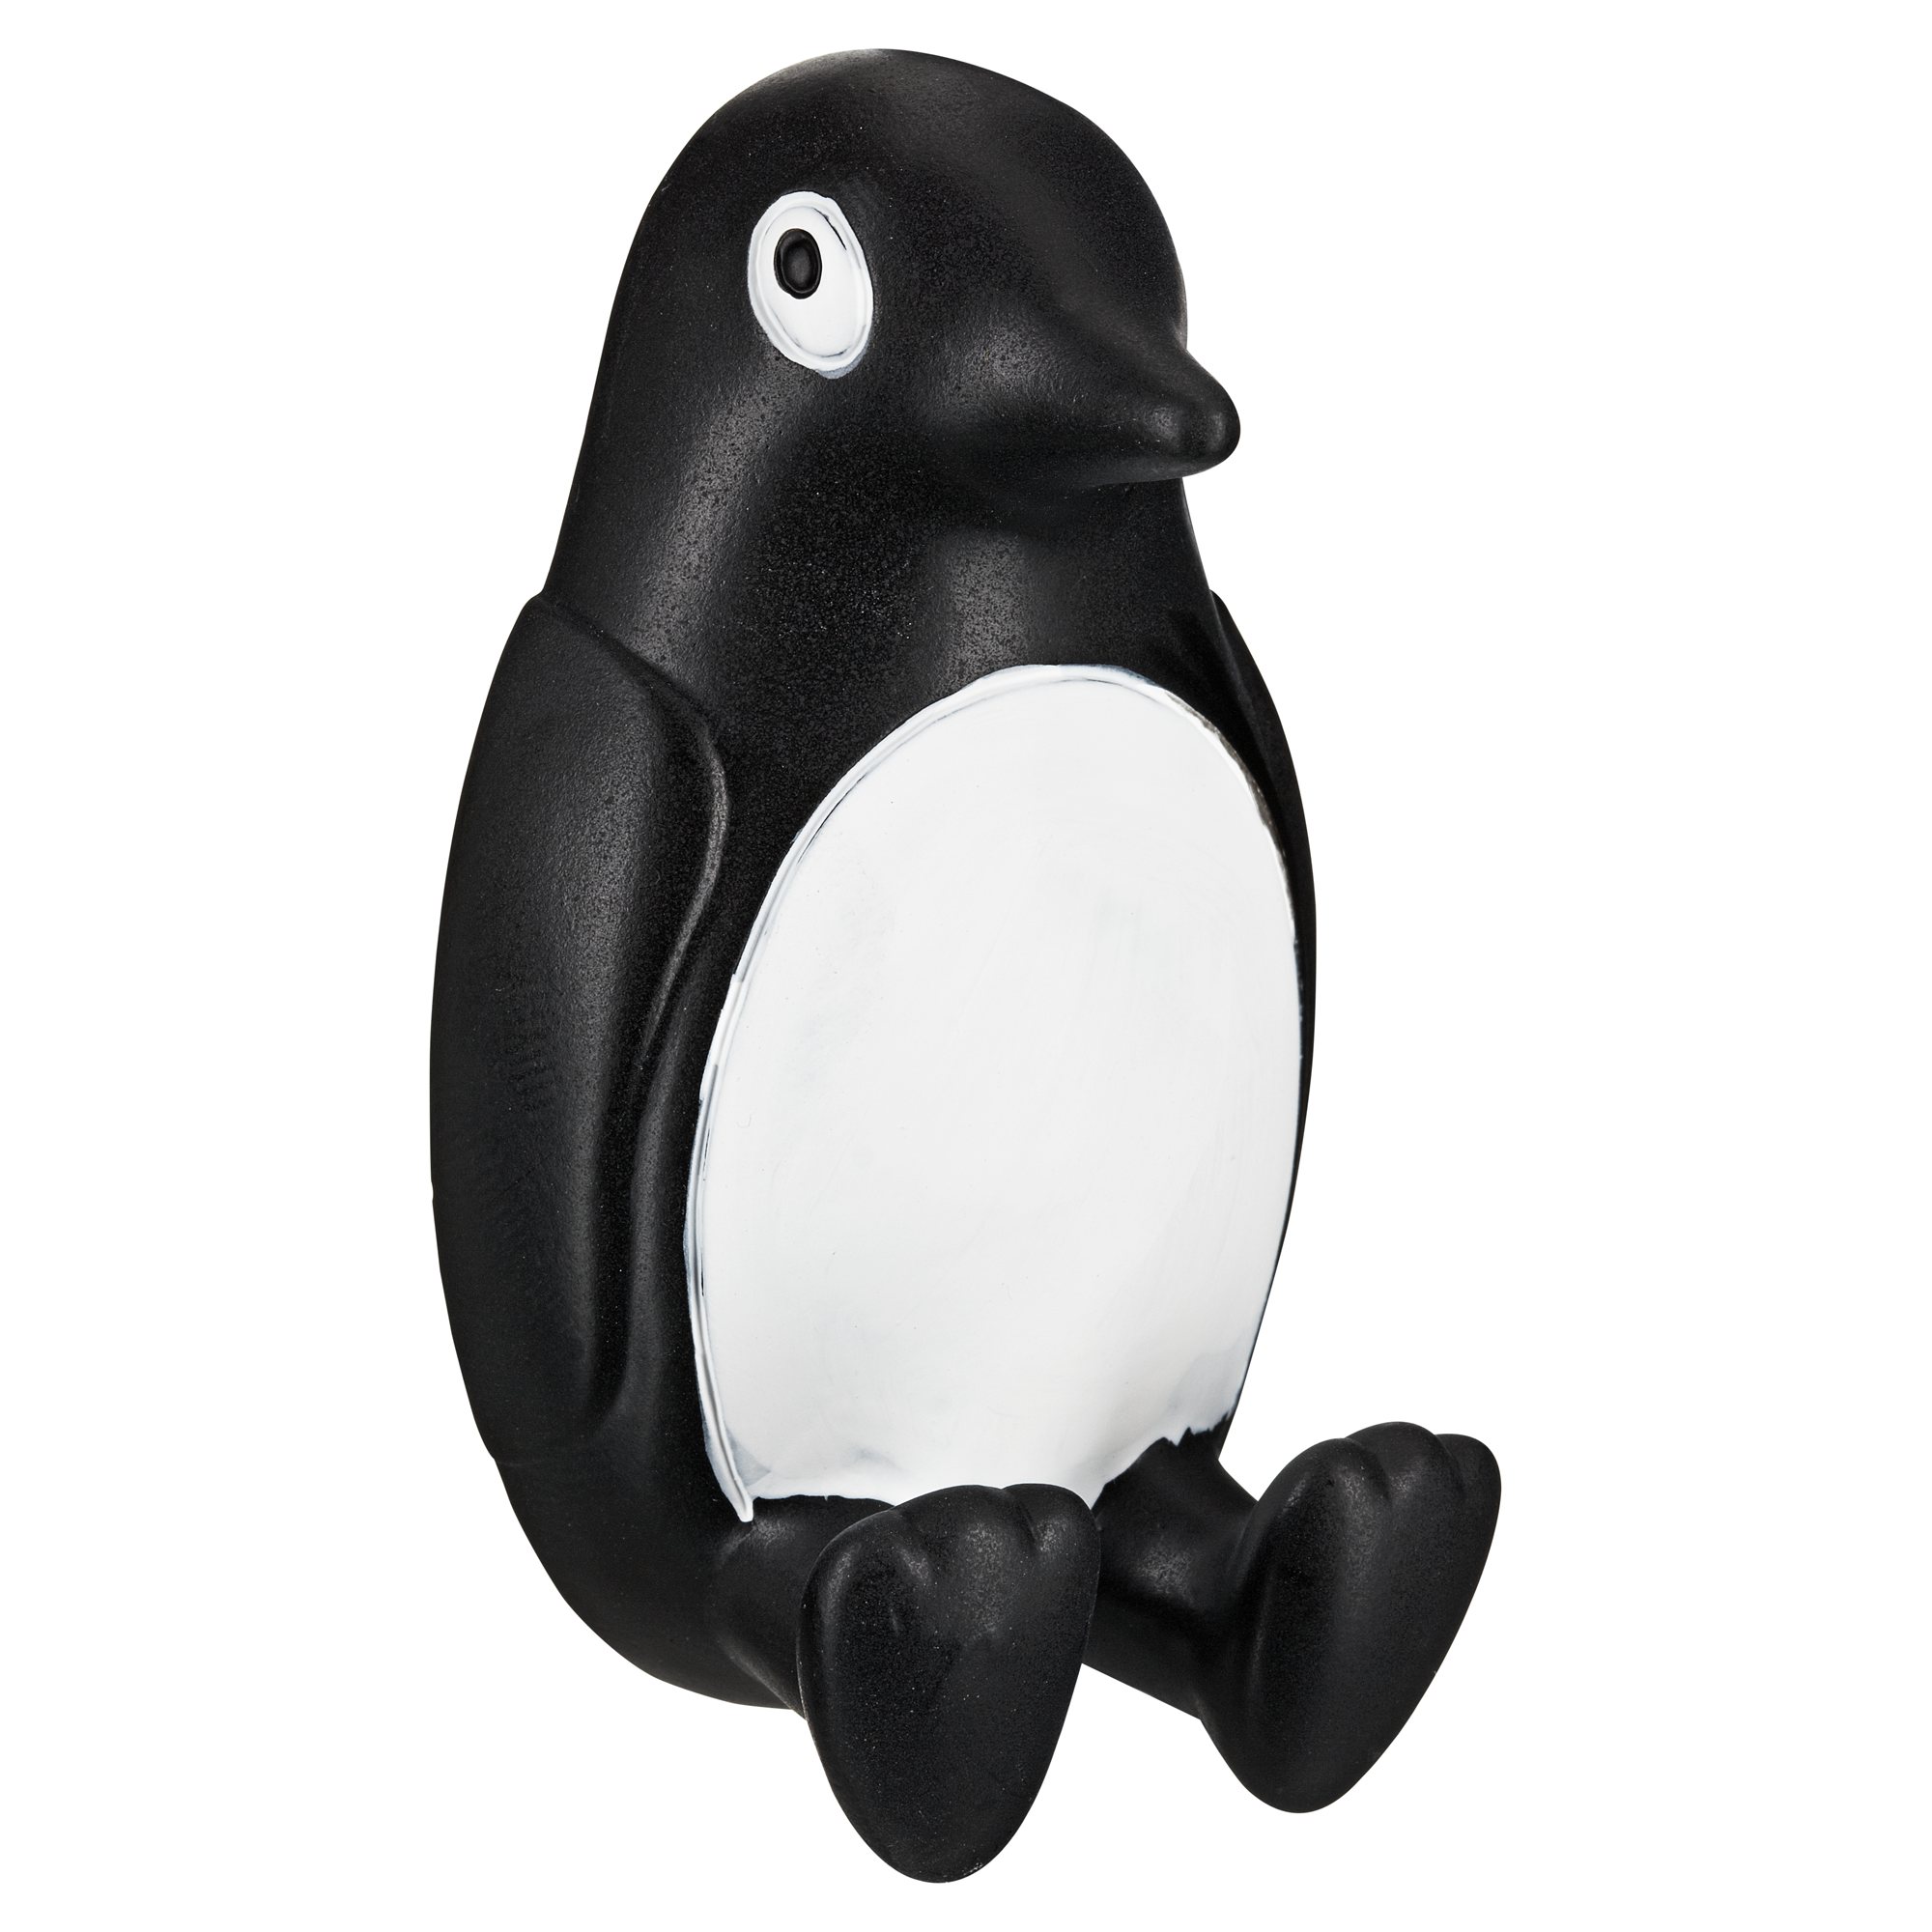 Klebehaken 'Pingu' schwarz-weiß + product picture